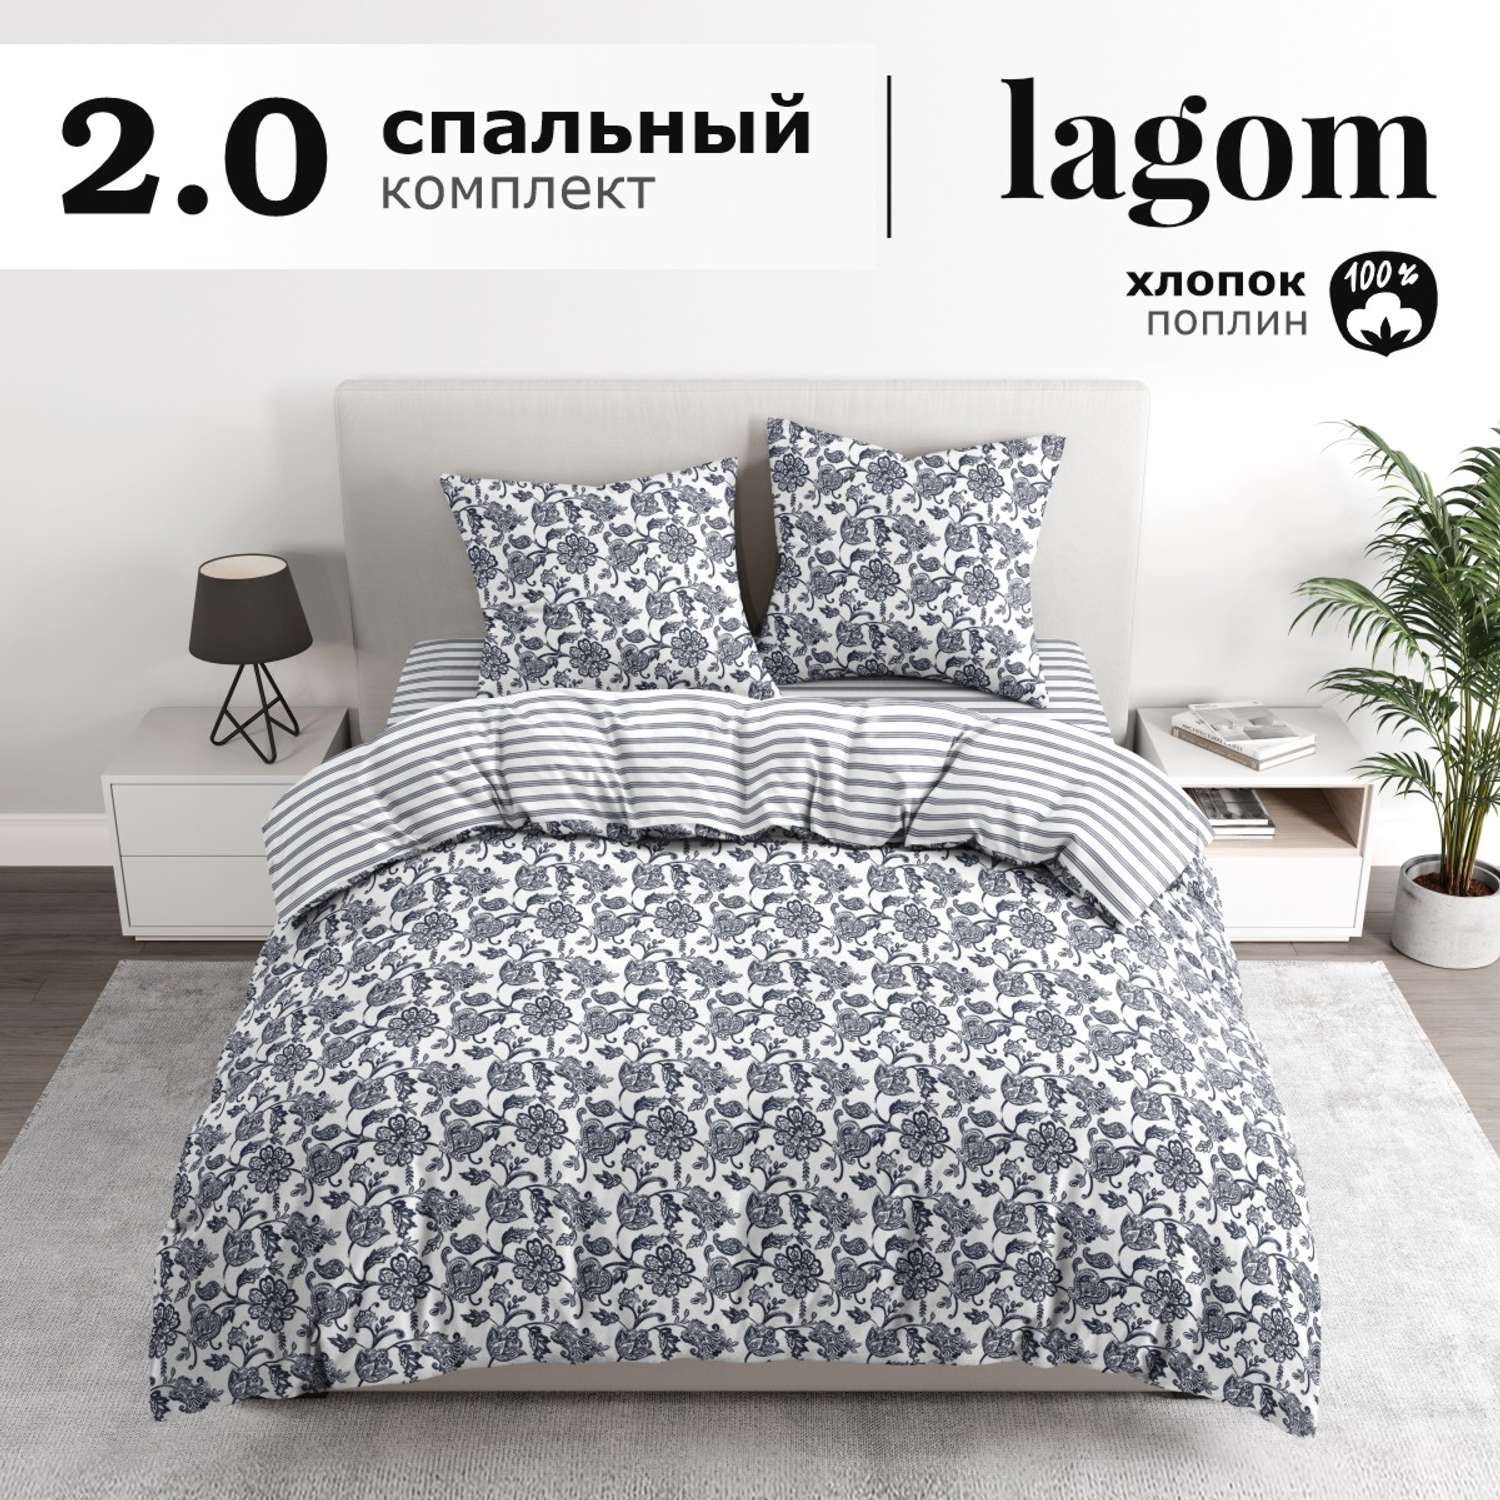 Комплект постельного белья lagom Эребру 2-спальный макси наволочки 70х70 - фото 1